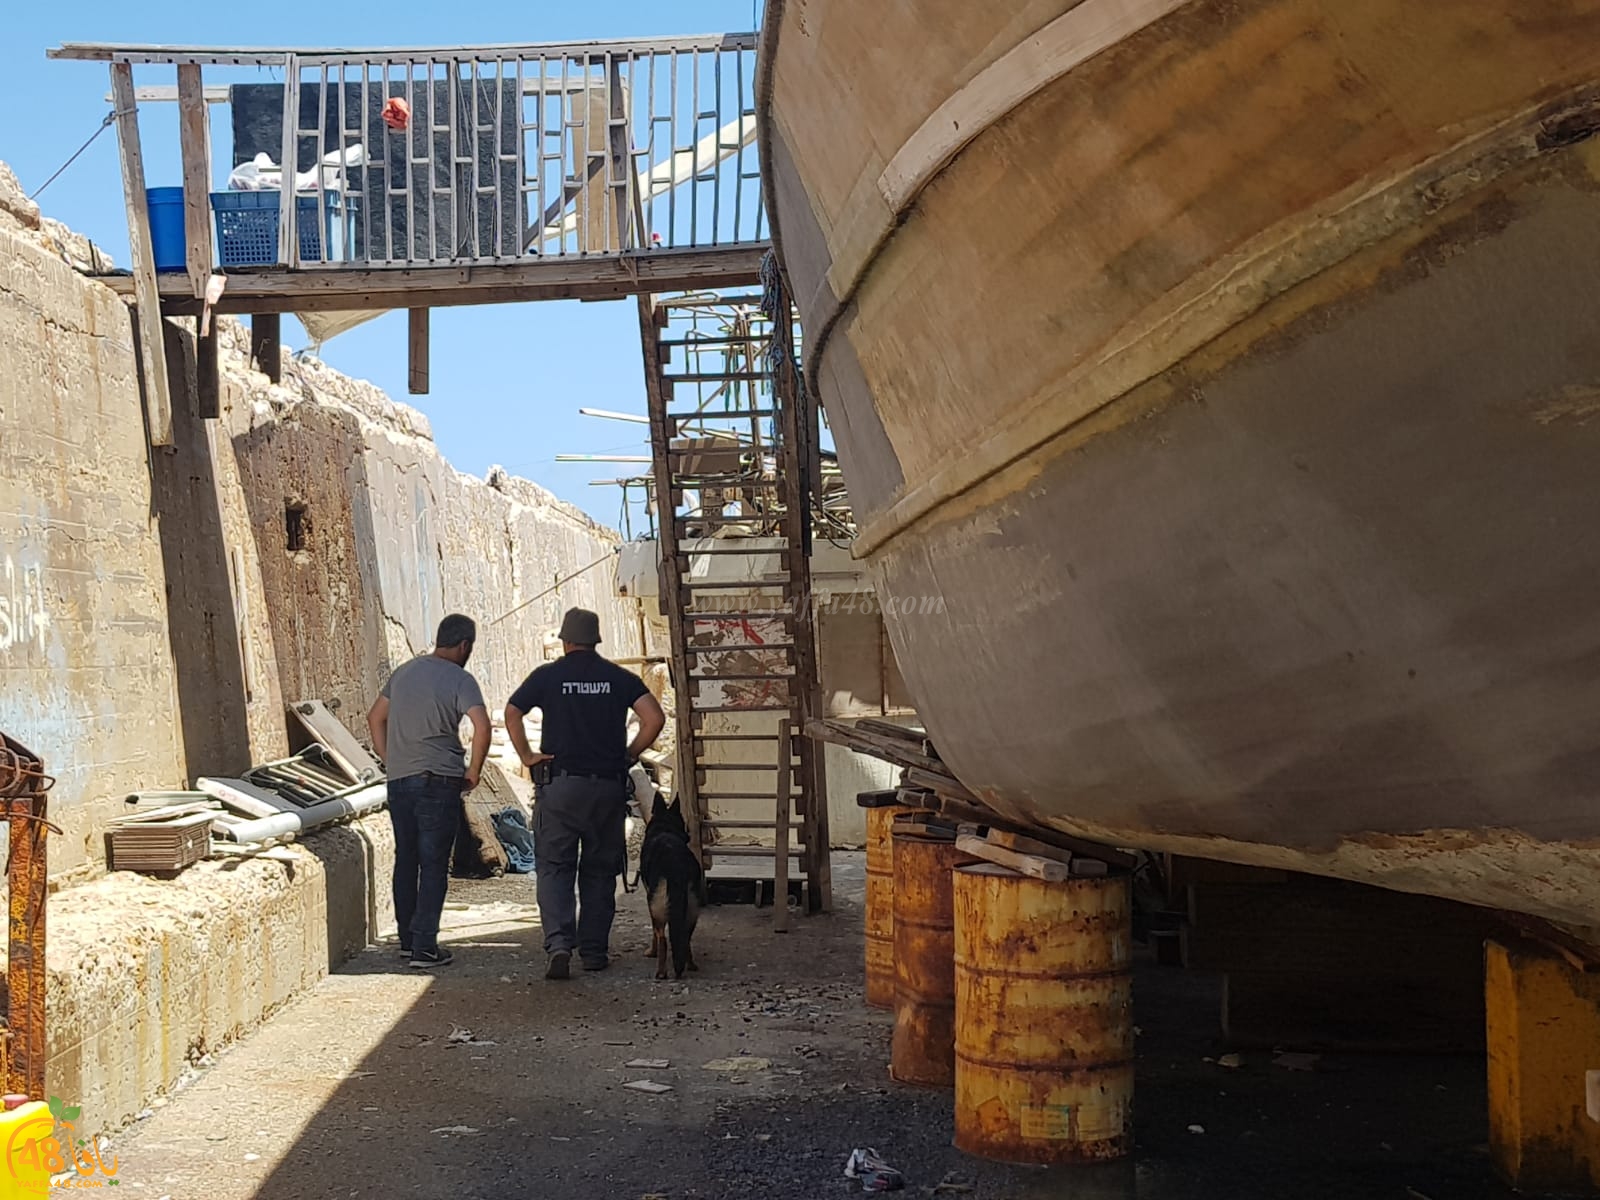 بالصور: للمرة الثالثة خلال اسبوعين - الشرطة تداهم مخازن الصيادين في ميناء يافا 